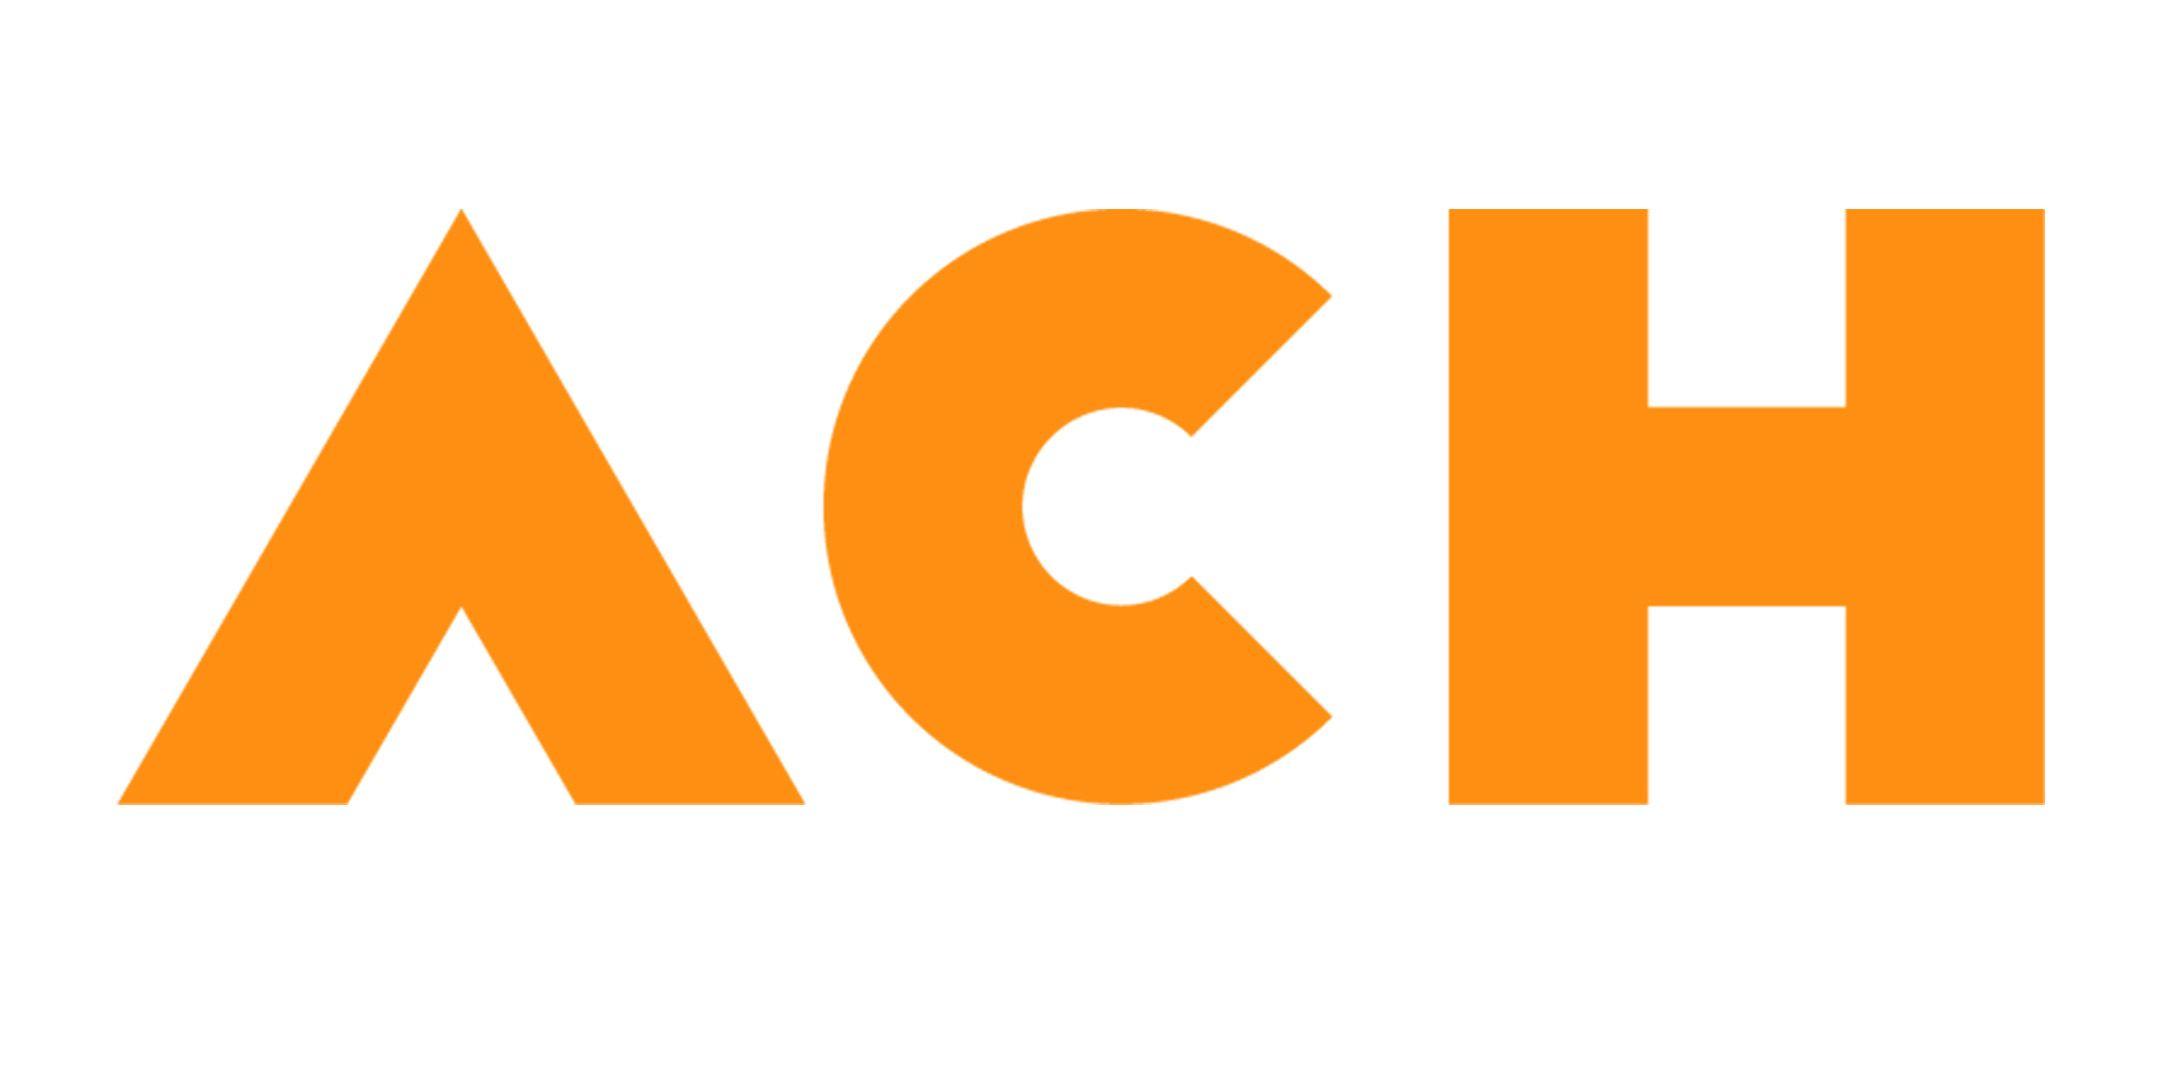 ACH Logo - Ashley Community Housing has evolved | Pressat